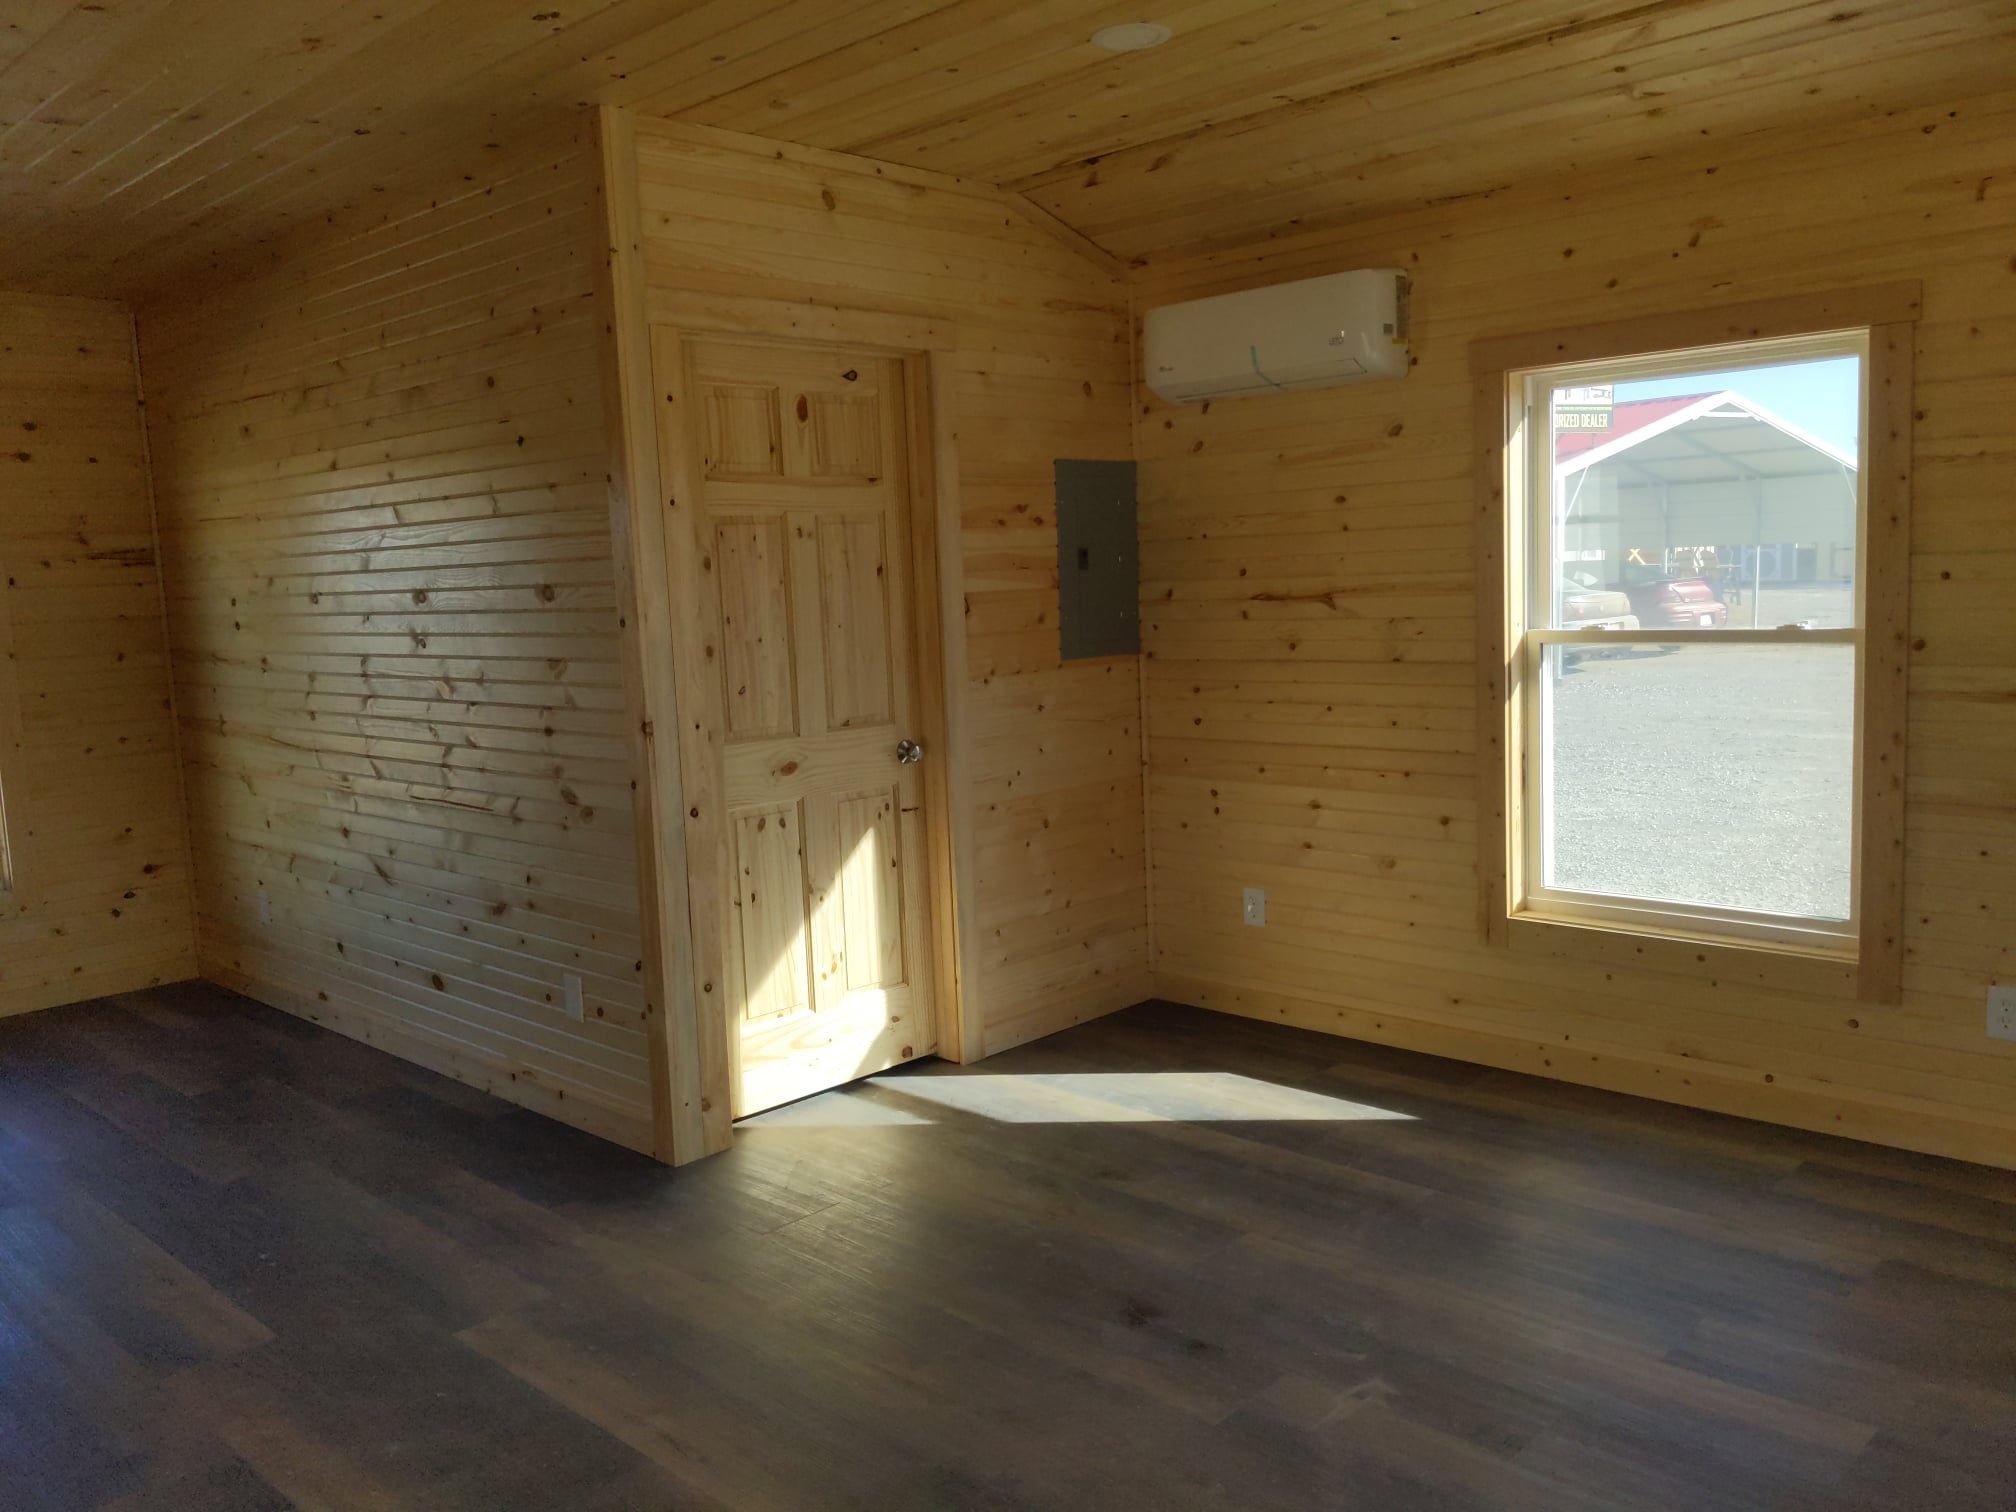 16x24 Studio Cabin Tiny Home Manhattan KS Overland Park KS Gardner KS